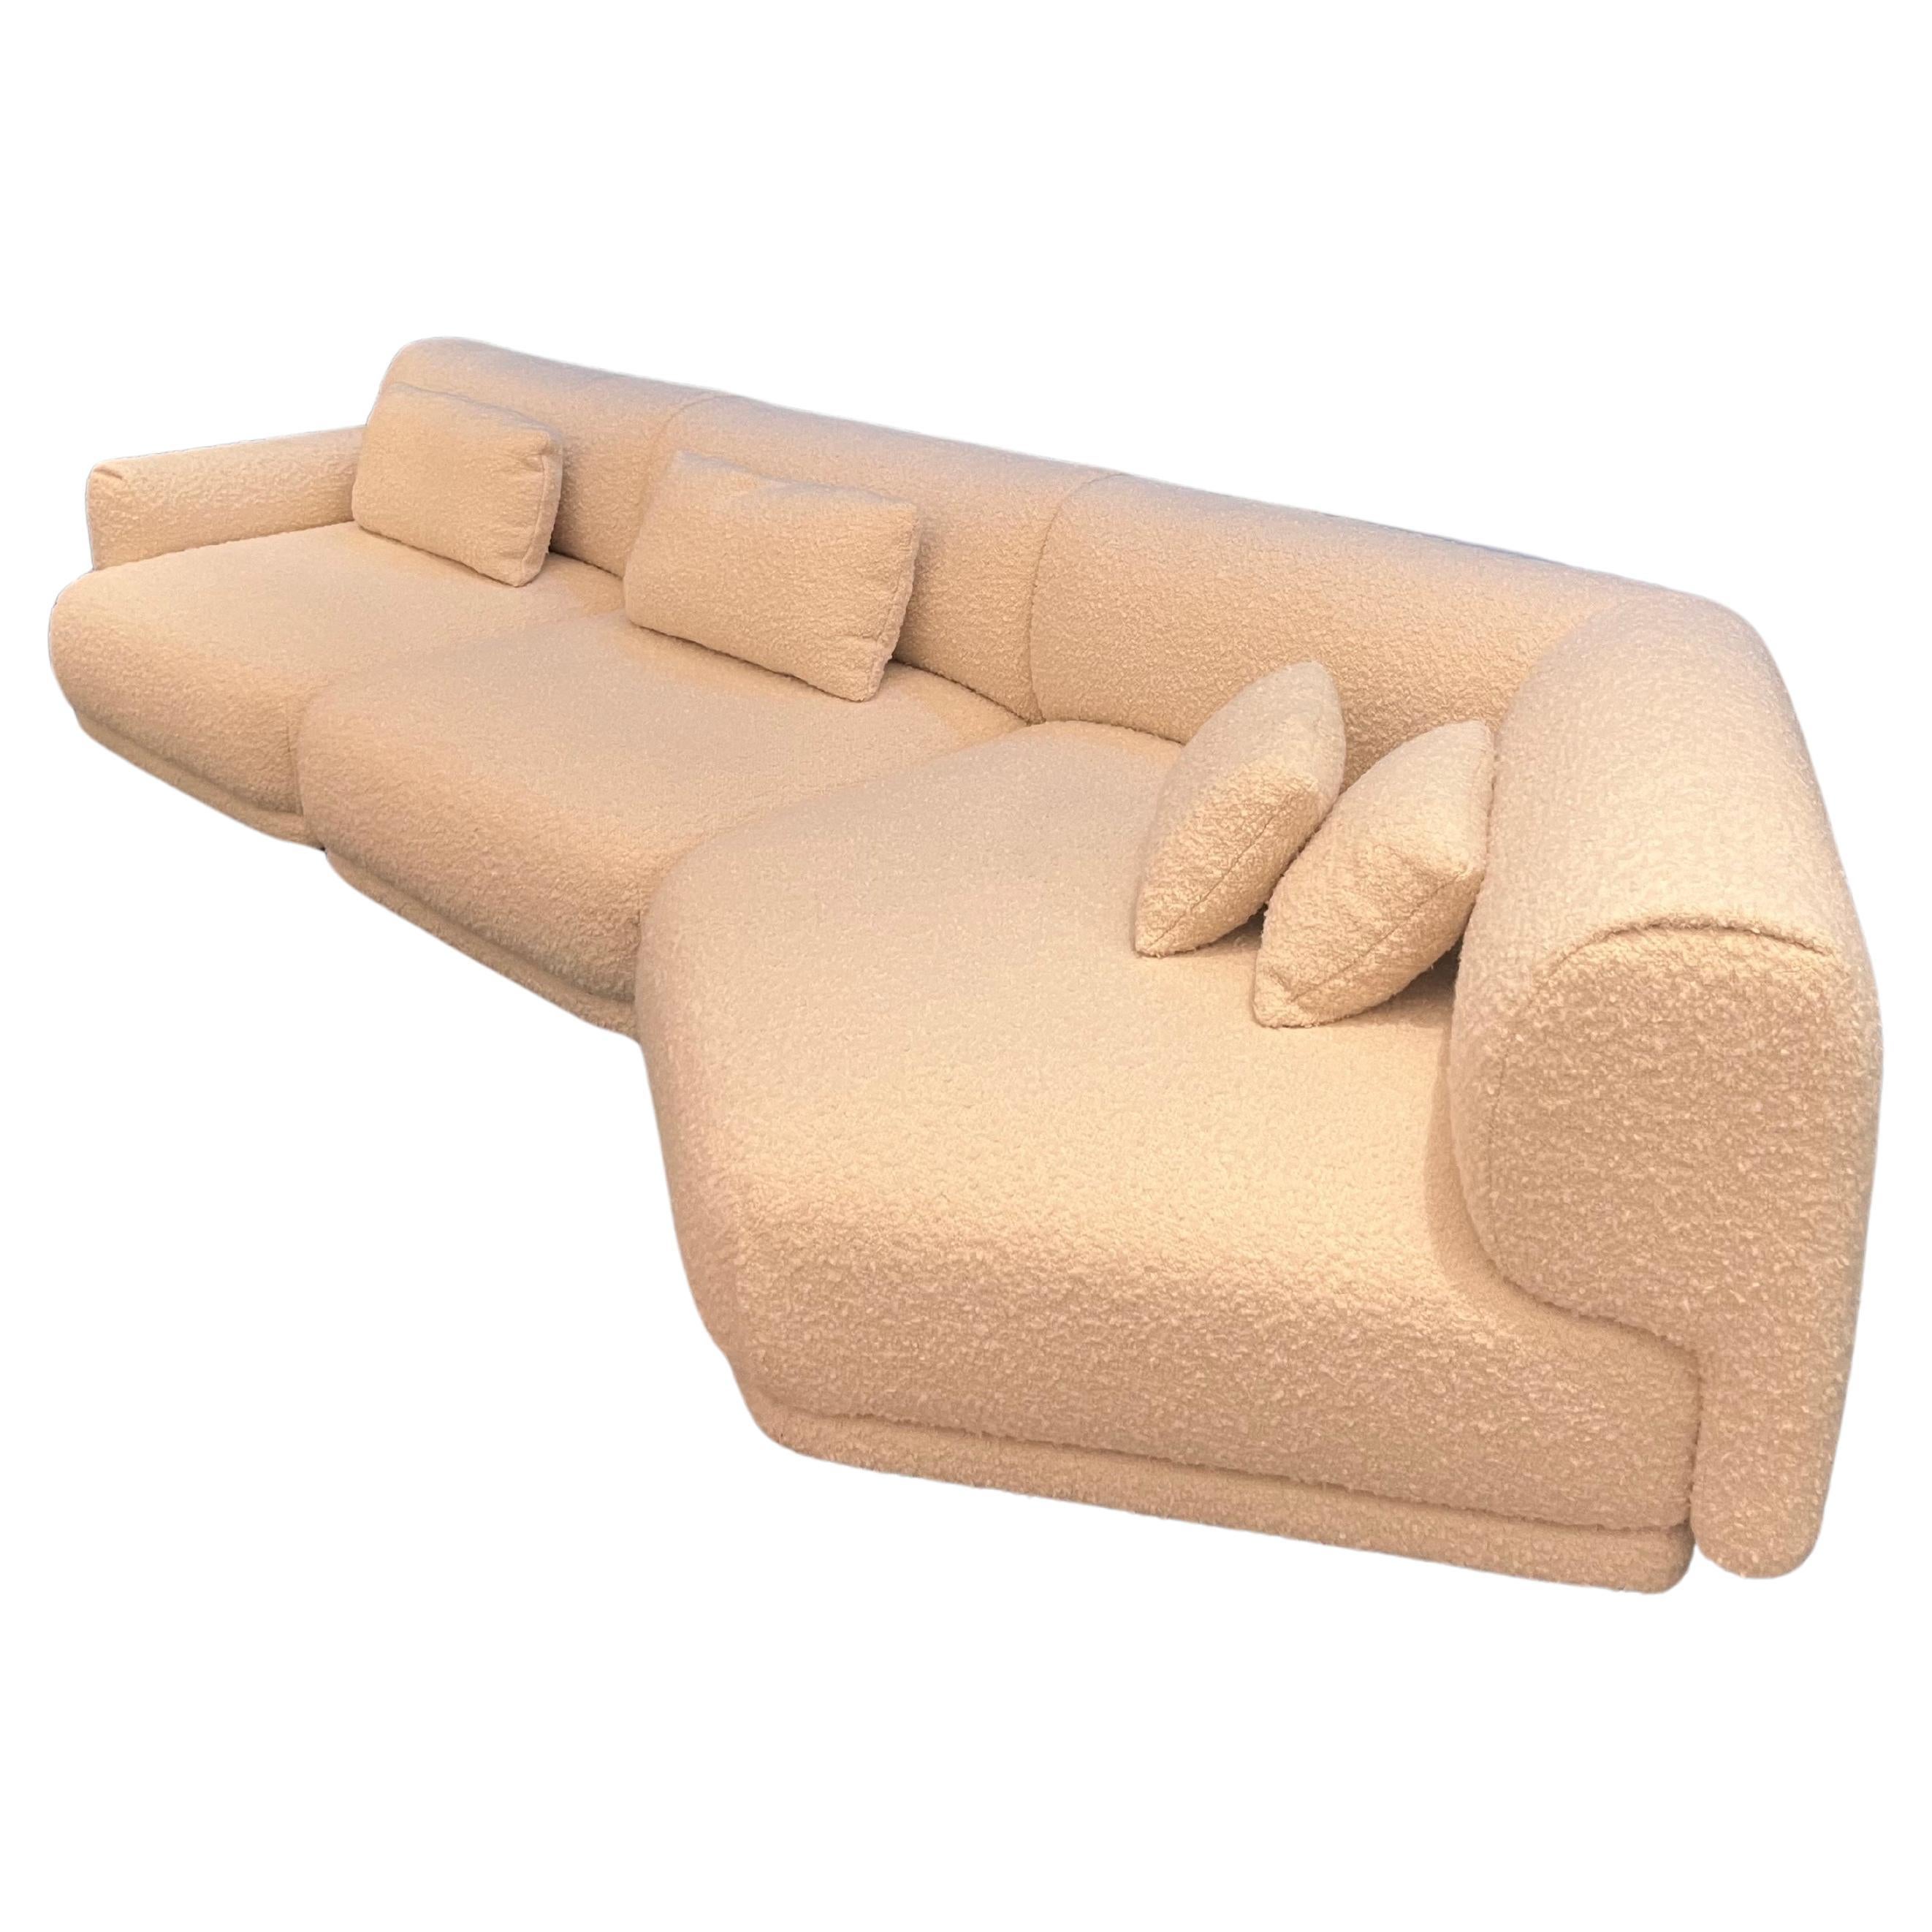 La Manufacture-Paris Moos Sectional Sofa by Sebastian Herkner in Stock For Sale